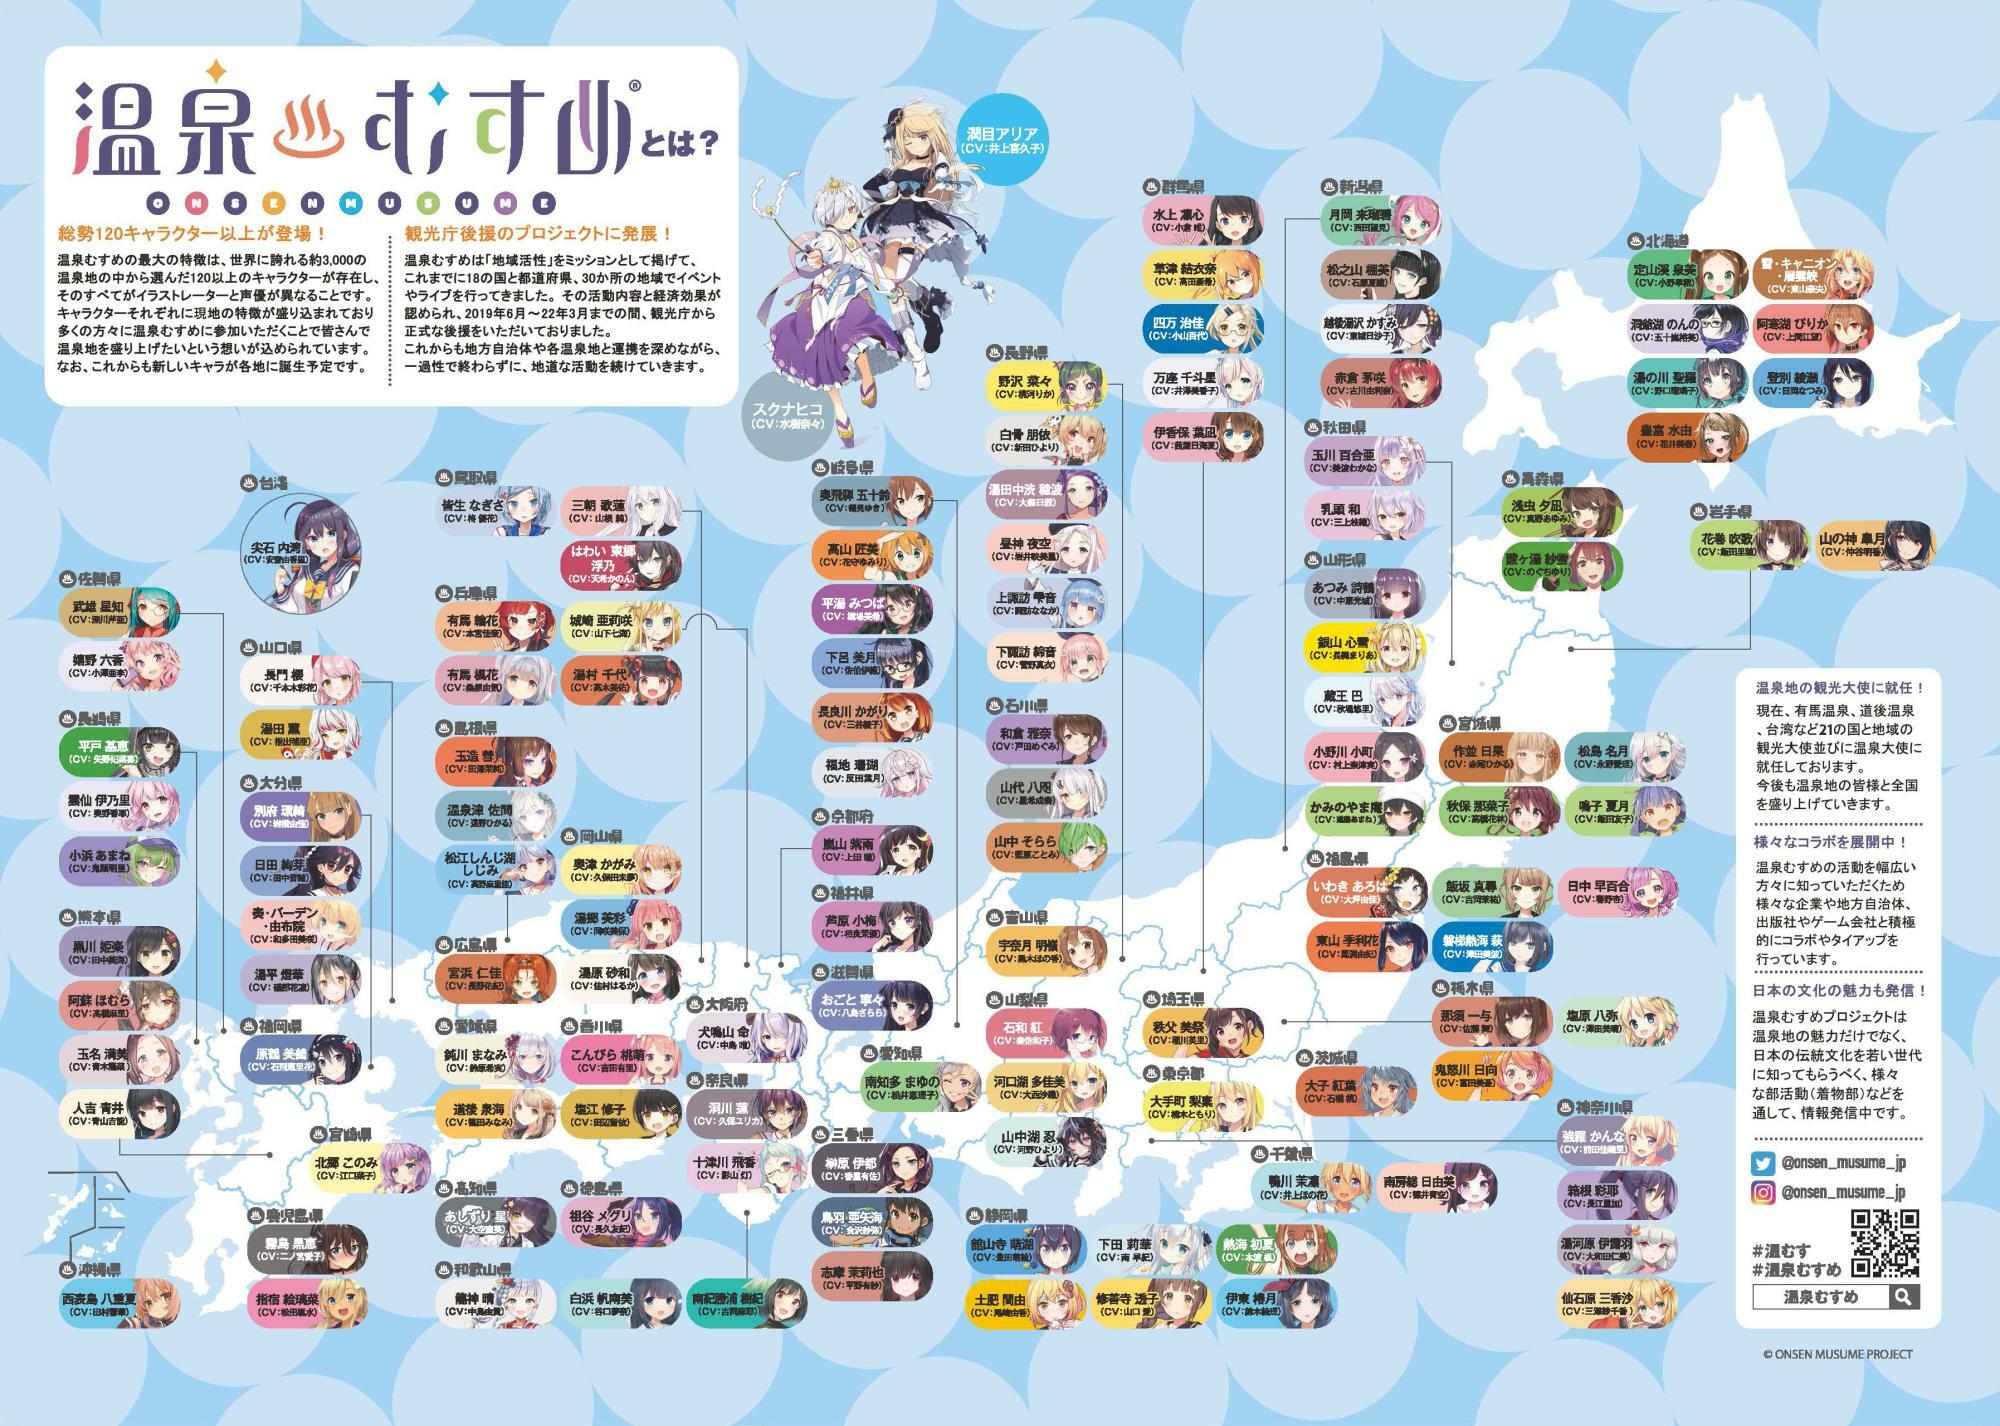 『温泉むすめ』全国マップ。127柱のキャラクターが全国と台湾で展開されている（エンバウンド提供）